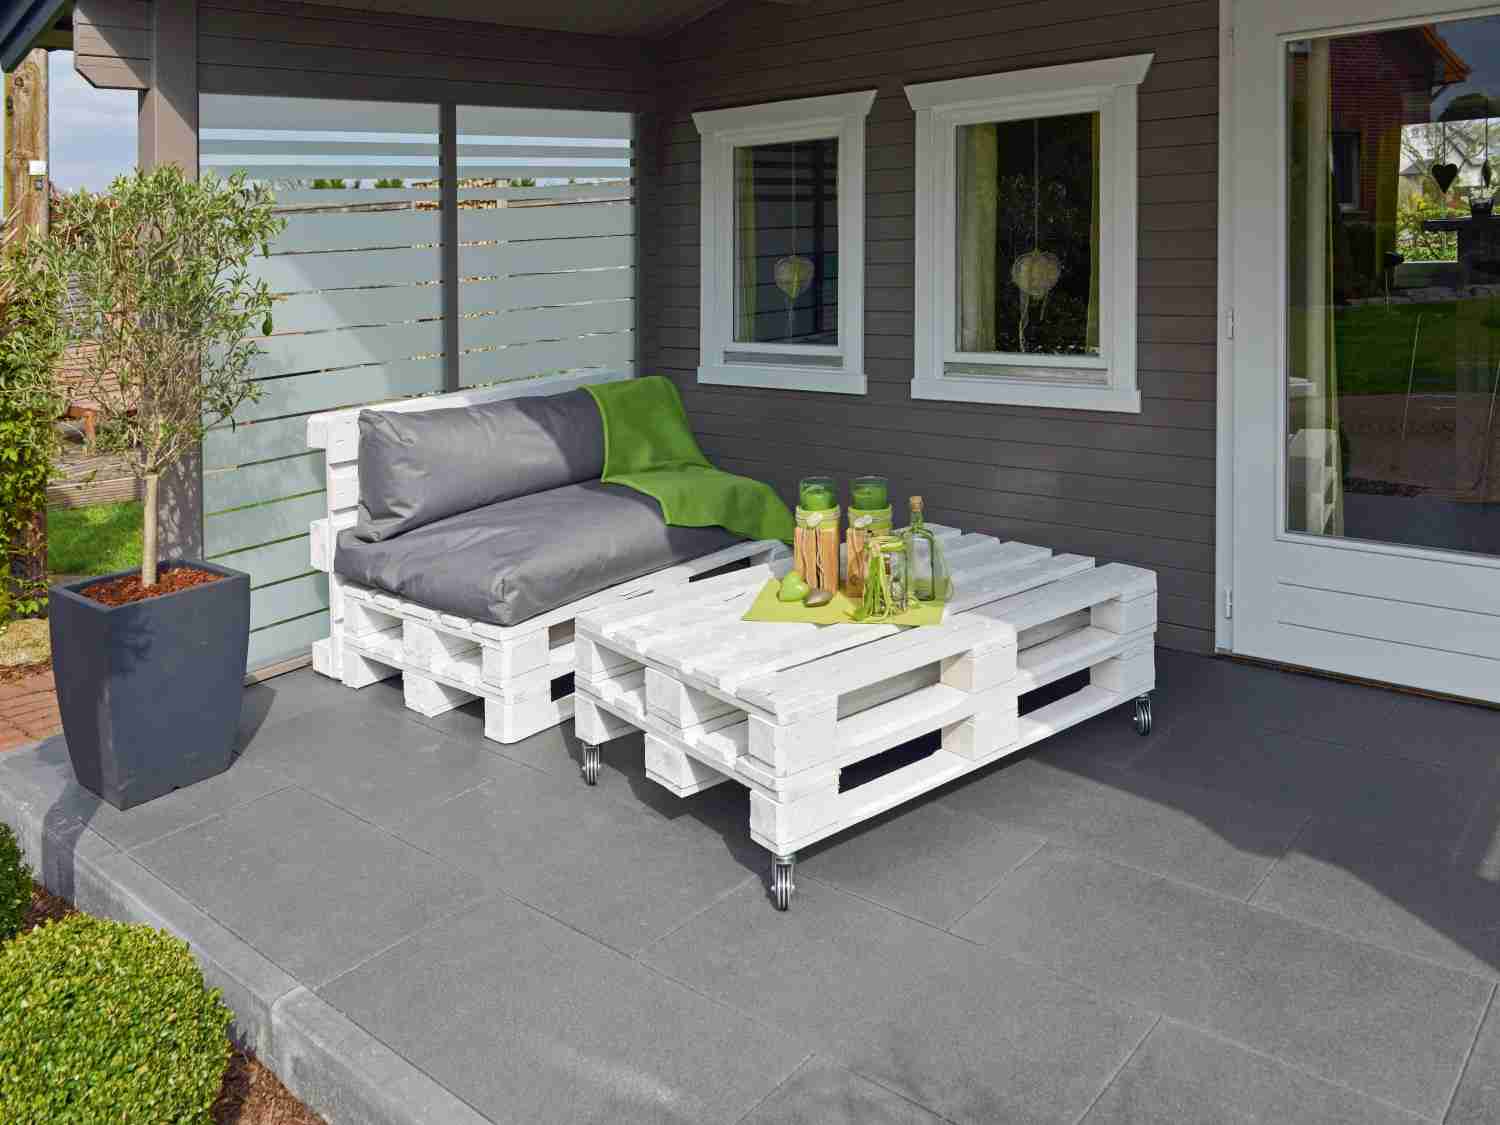 Rund ums Haus Individuelle Möbel aus Paletten verwandeln den Außenbereich in eine Komfortzone - News, Bild 1